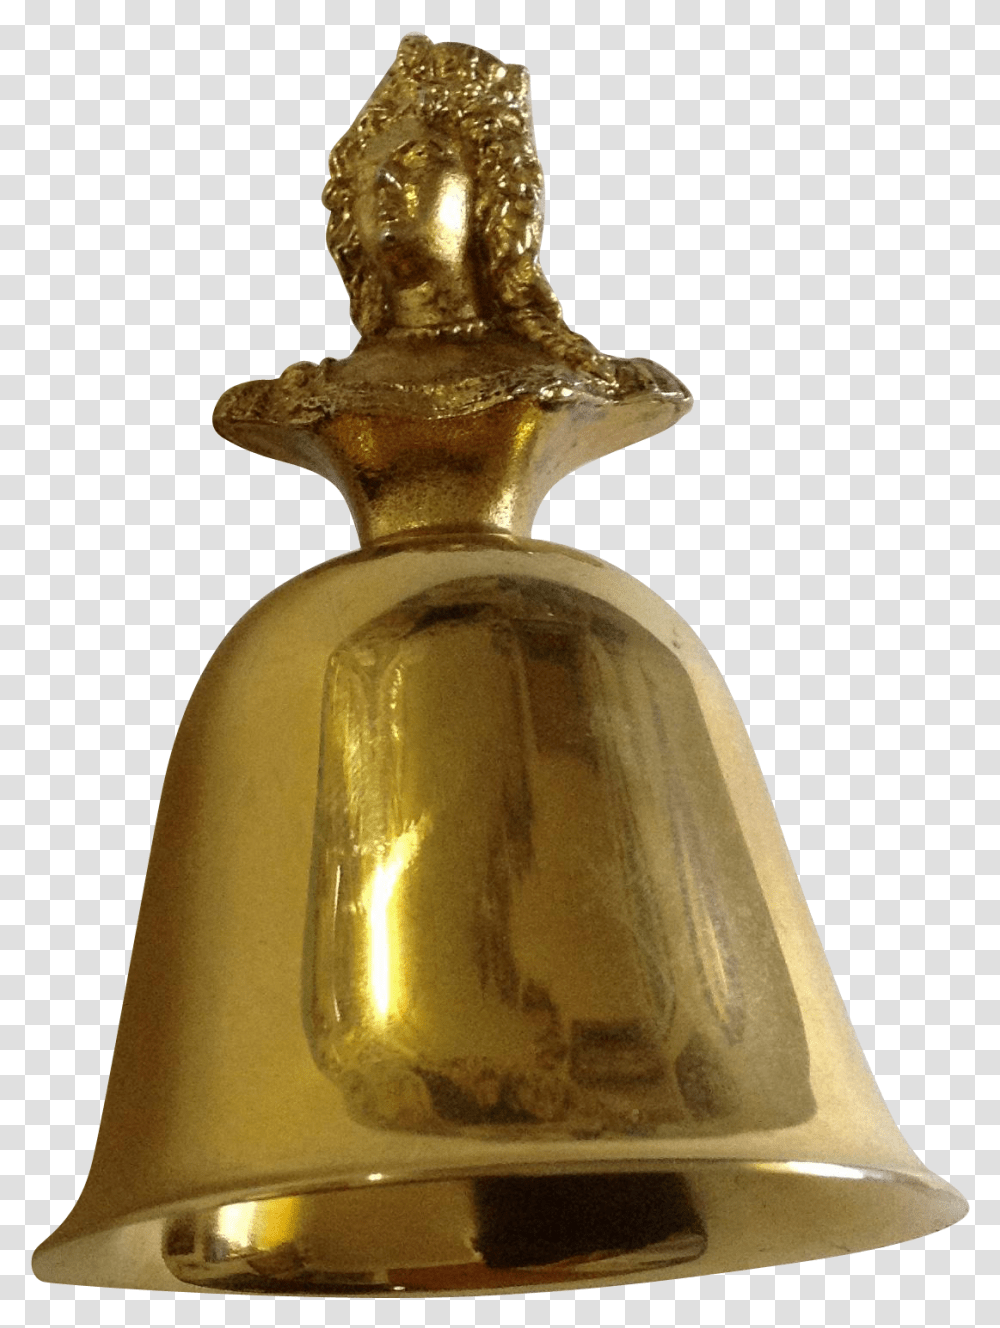 Bell Metal Bell, Lamp, Gold, Bronze, Treasure Transparent Png